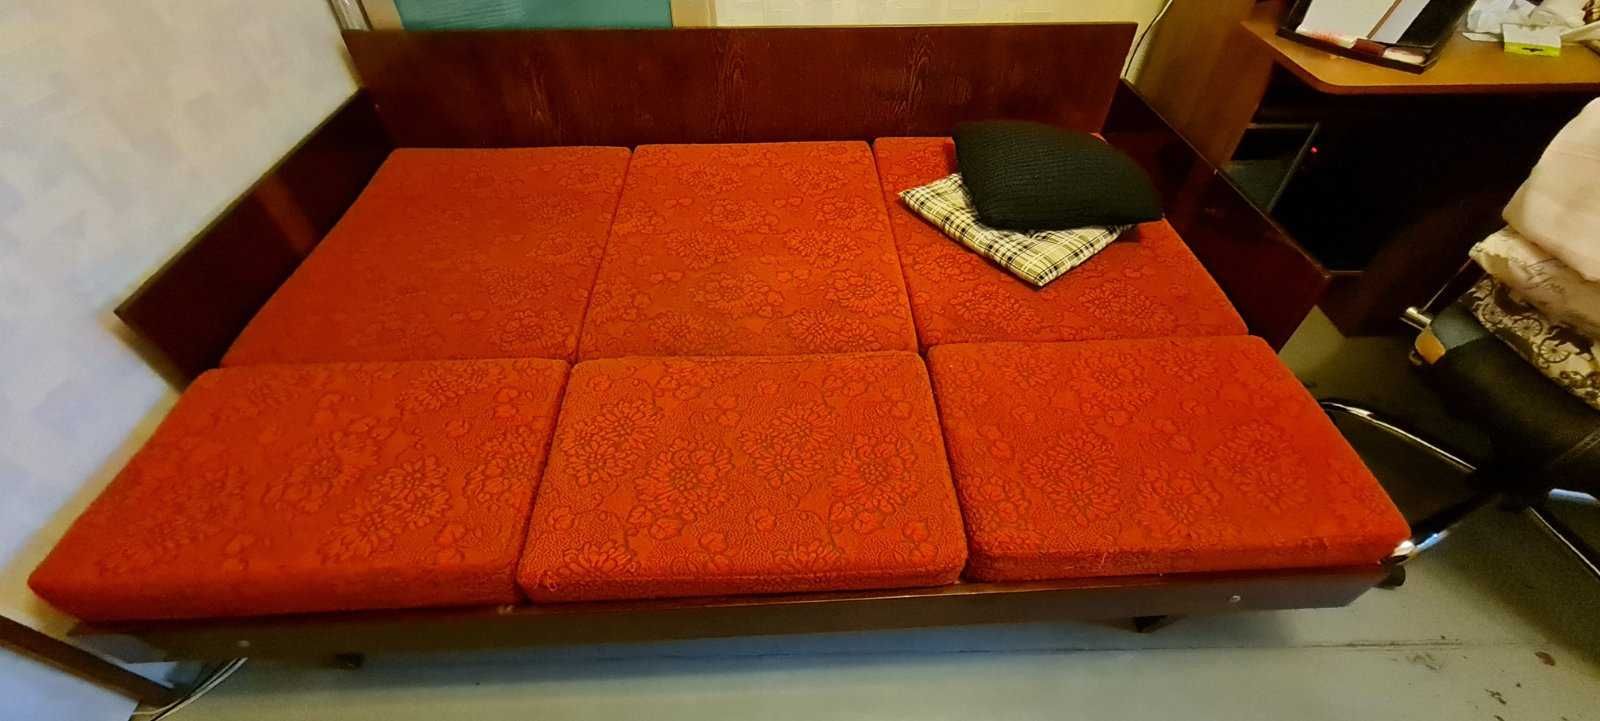 Диван-кровать в хорошем состоянии недорого